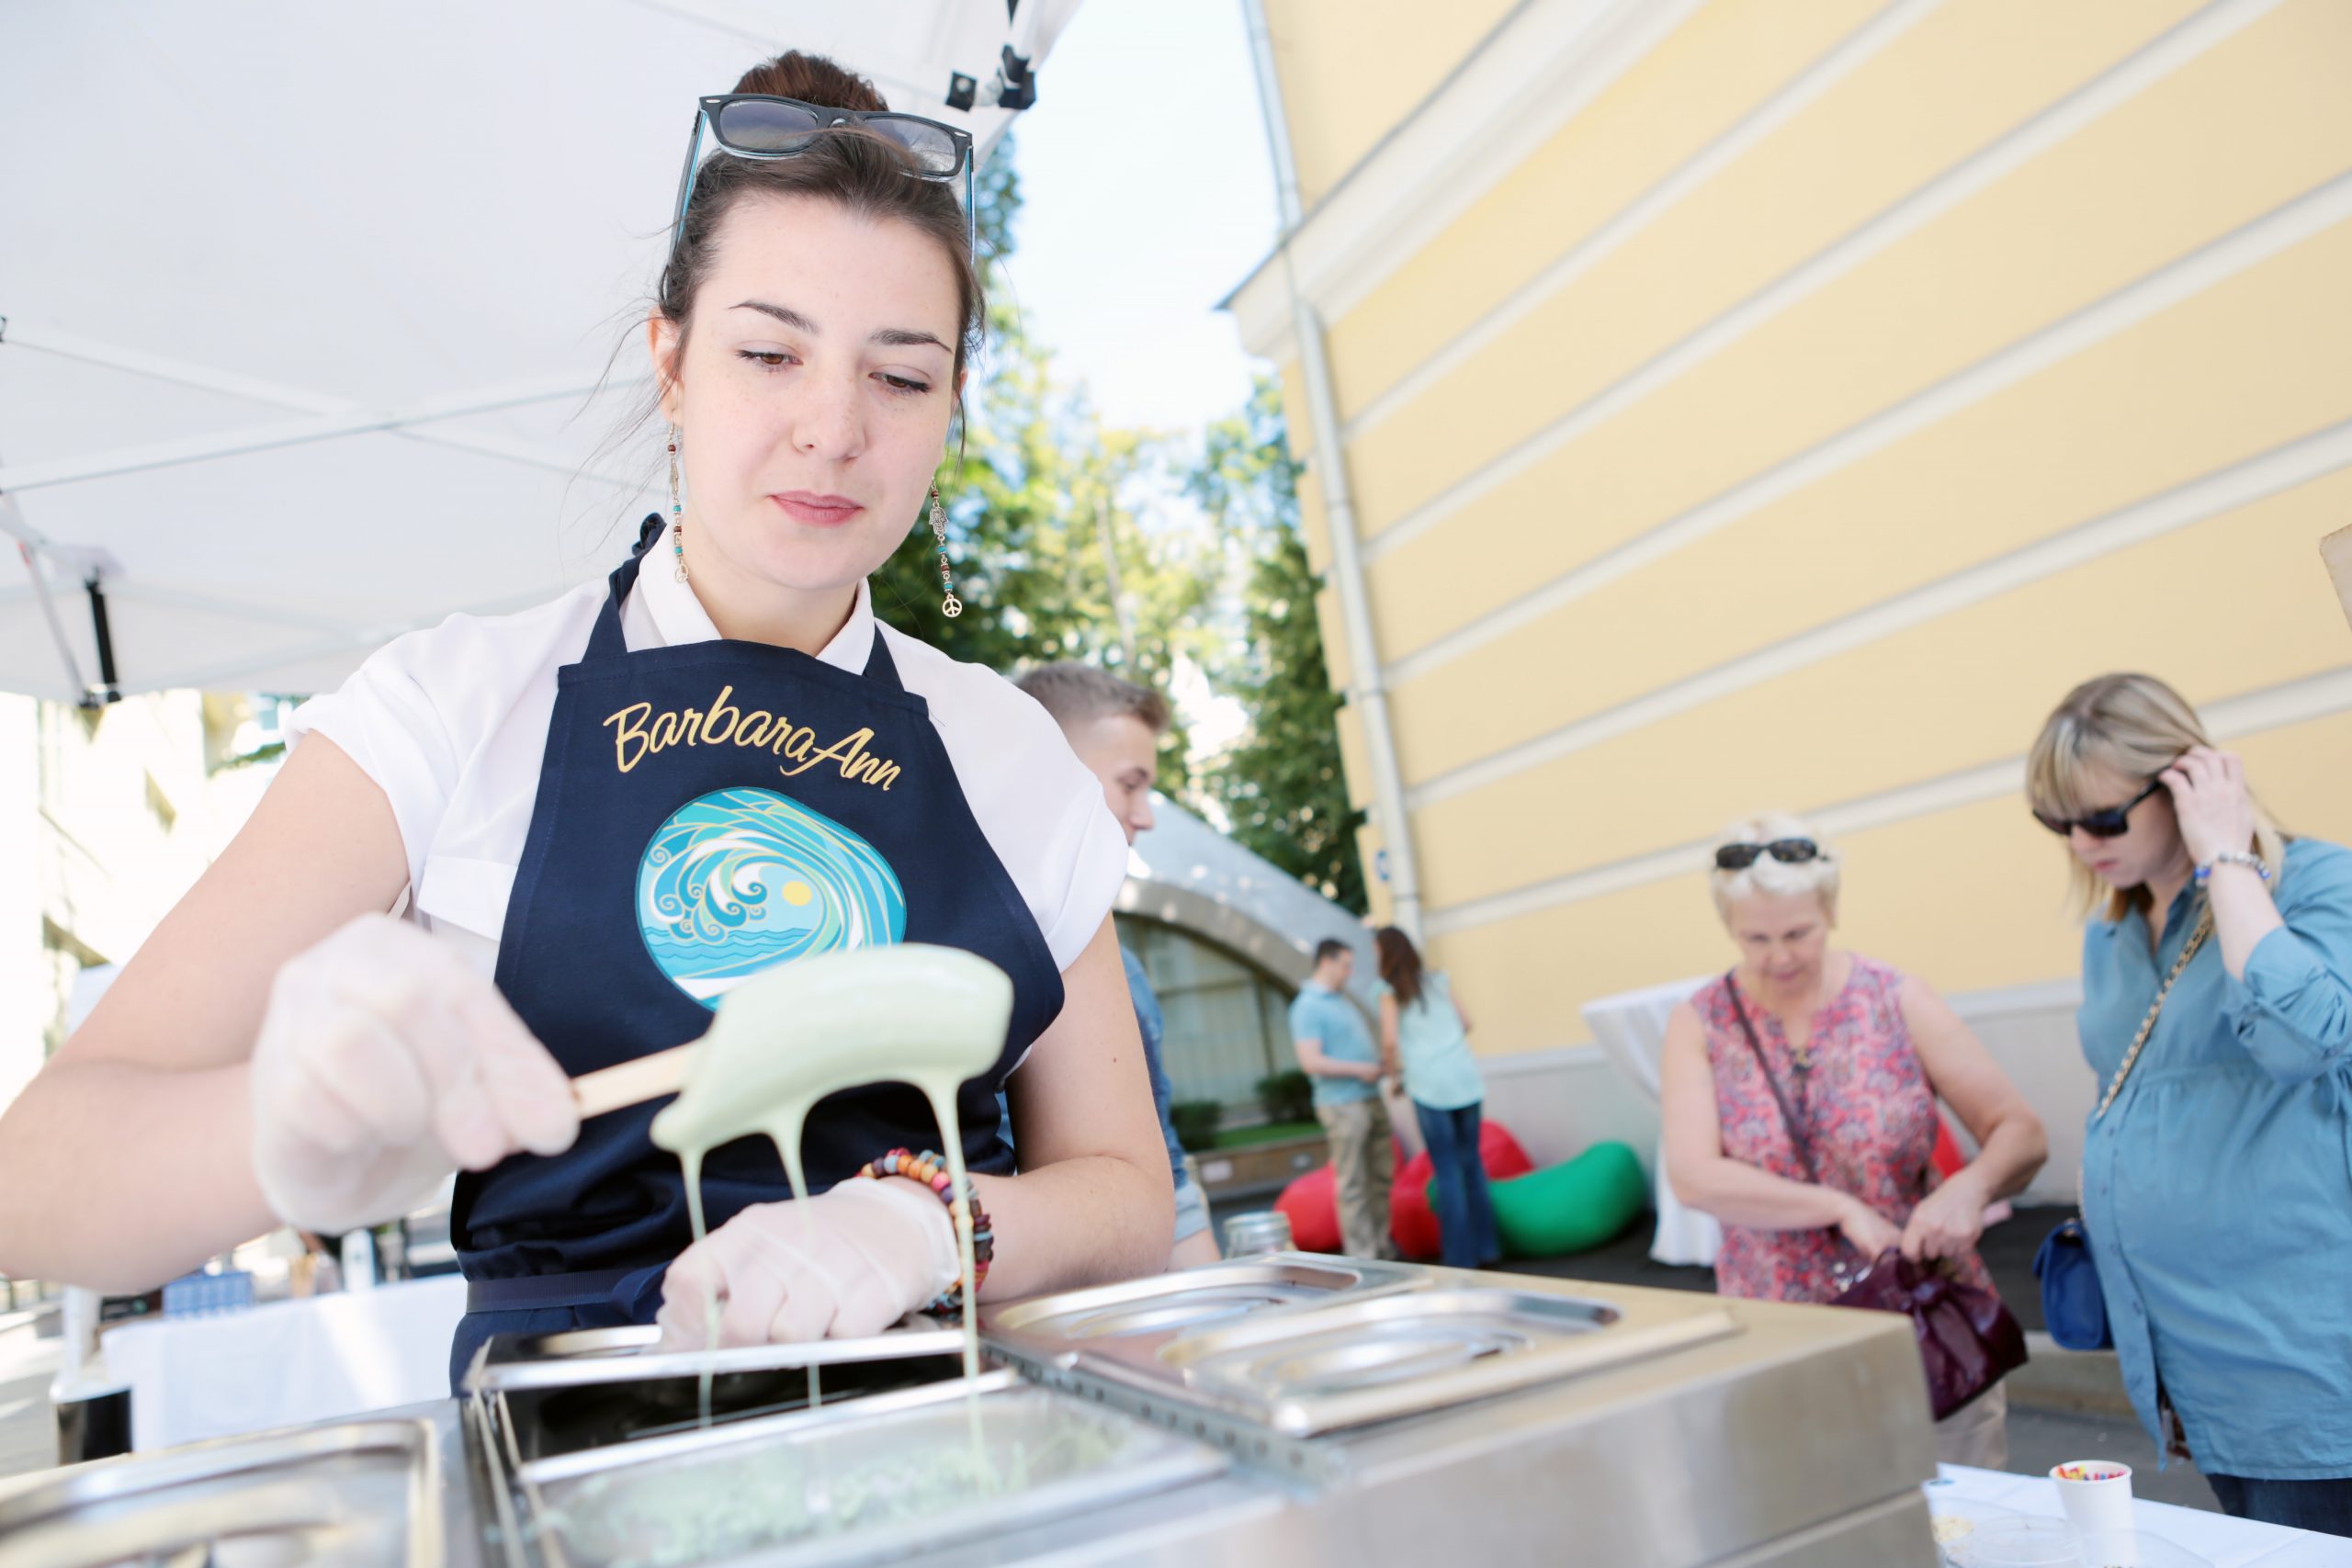 Посетители площадок «Лето в городе» смогут попробовать жареное мороженое и азиатские мини-бургеры